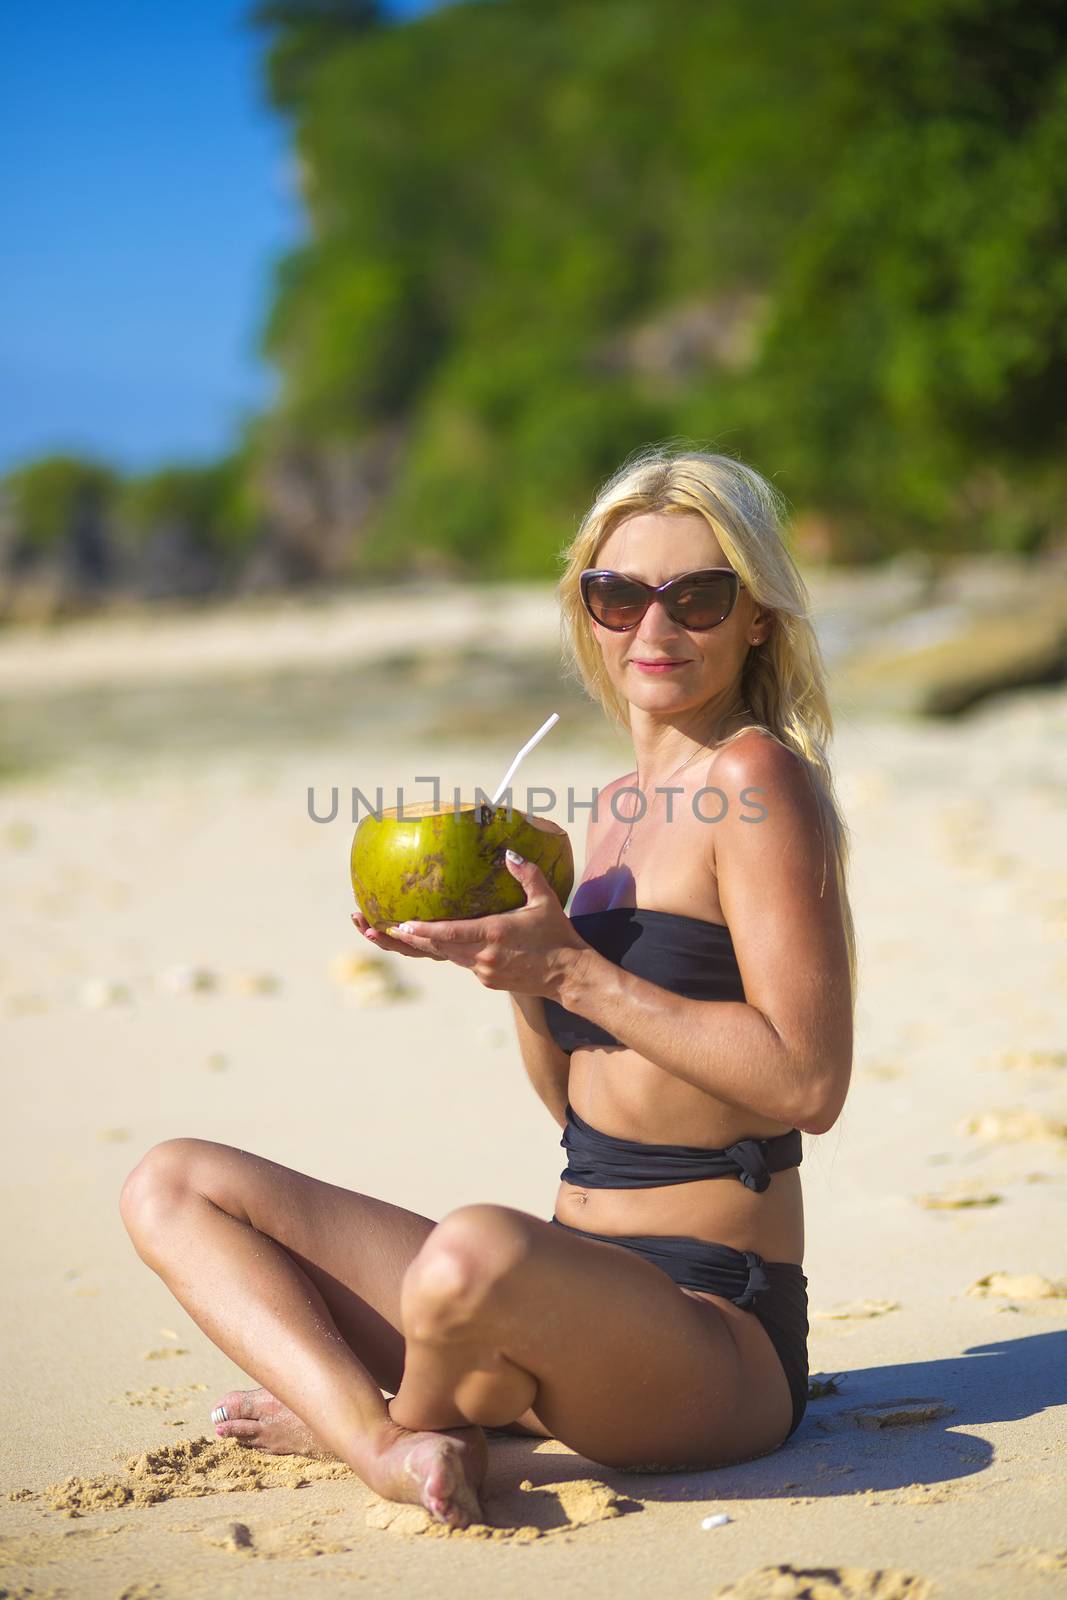 Young Woman in Bikini in Tropical Island
released